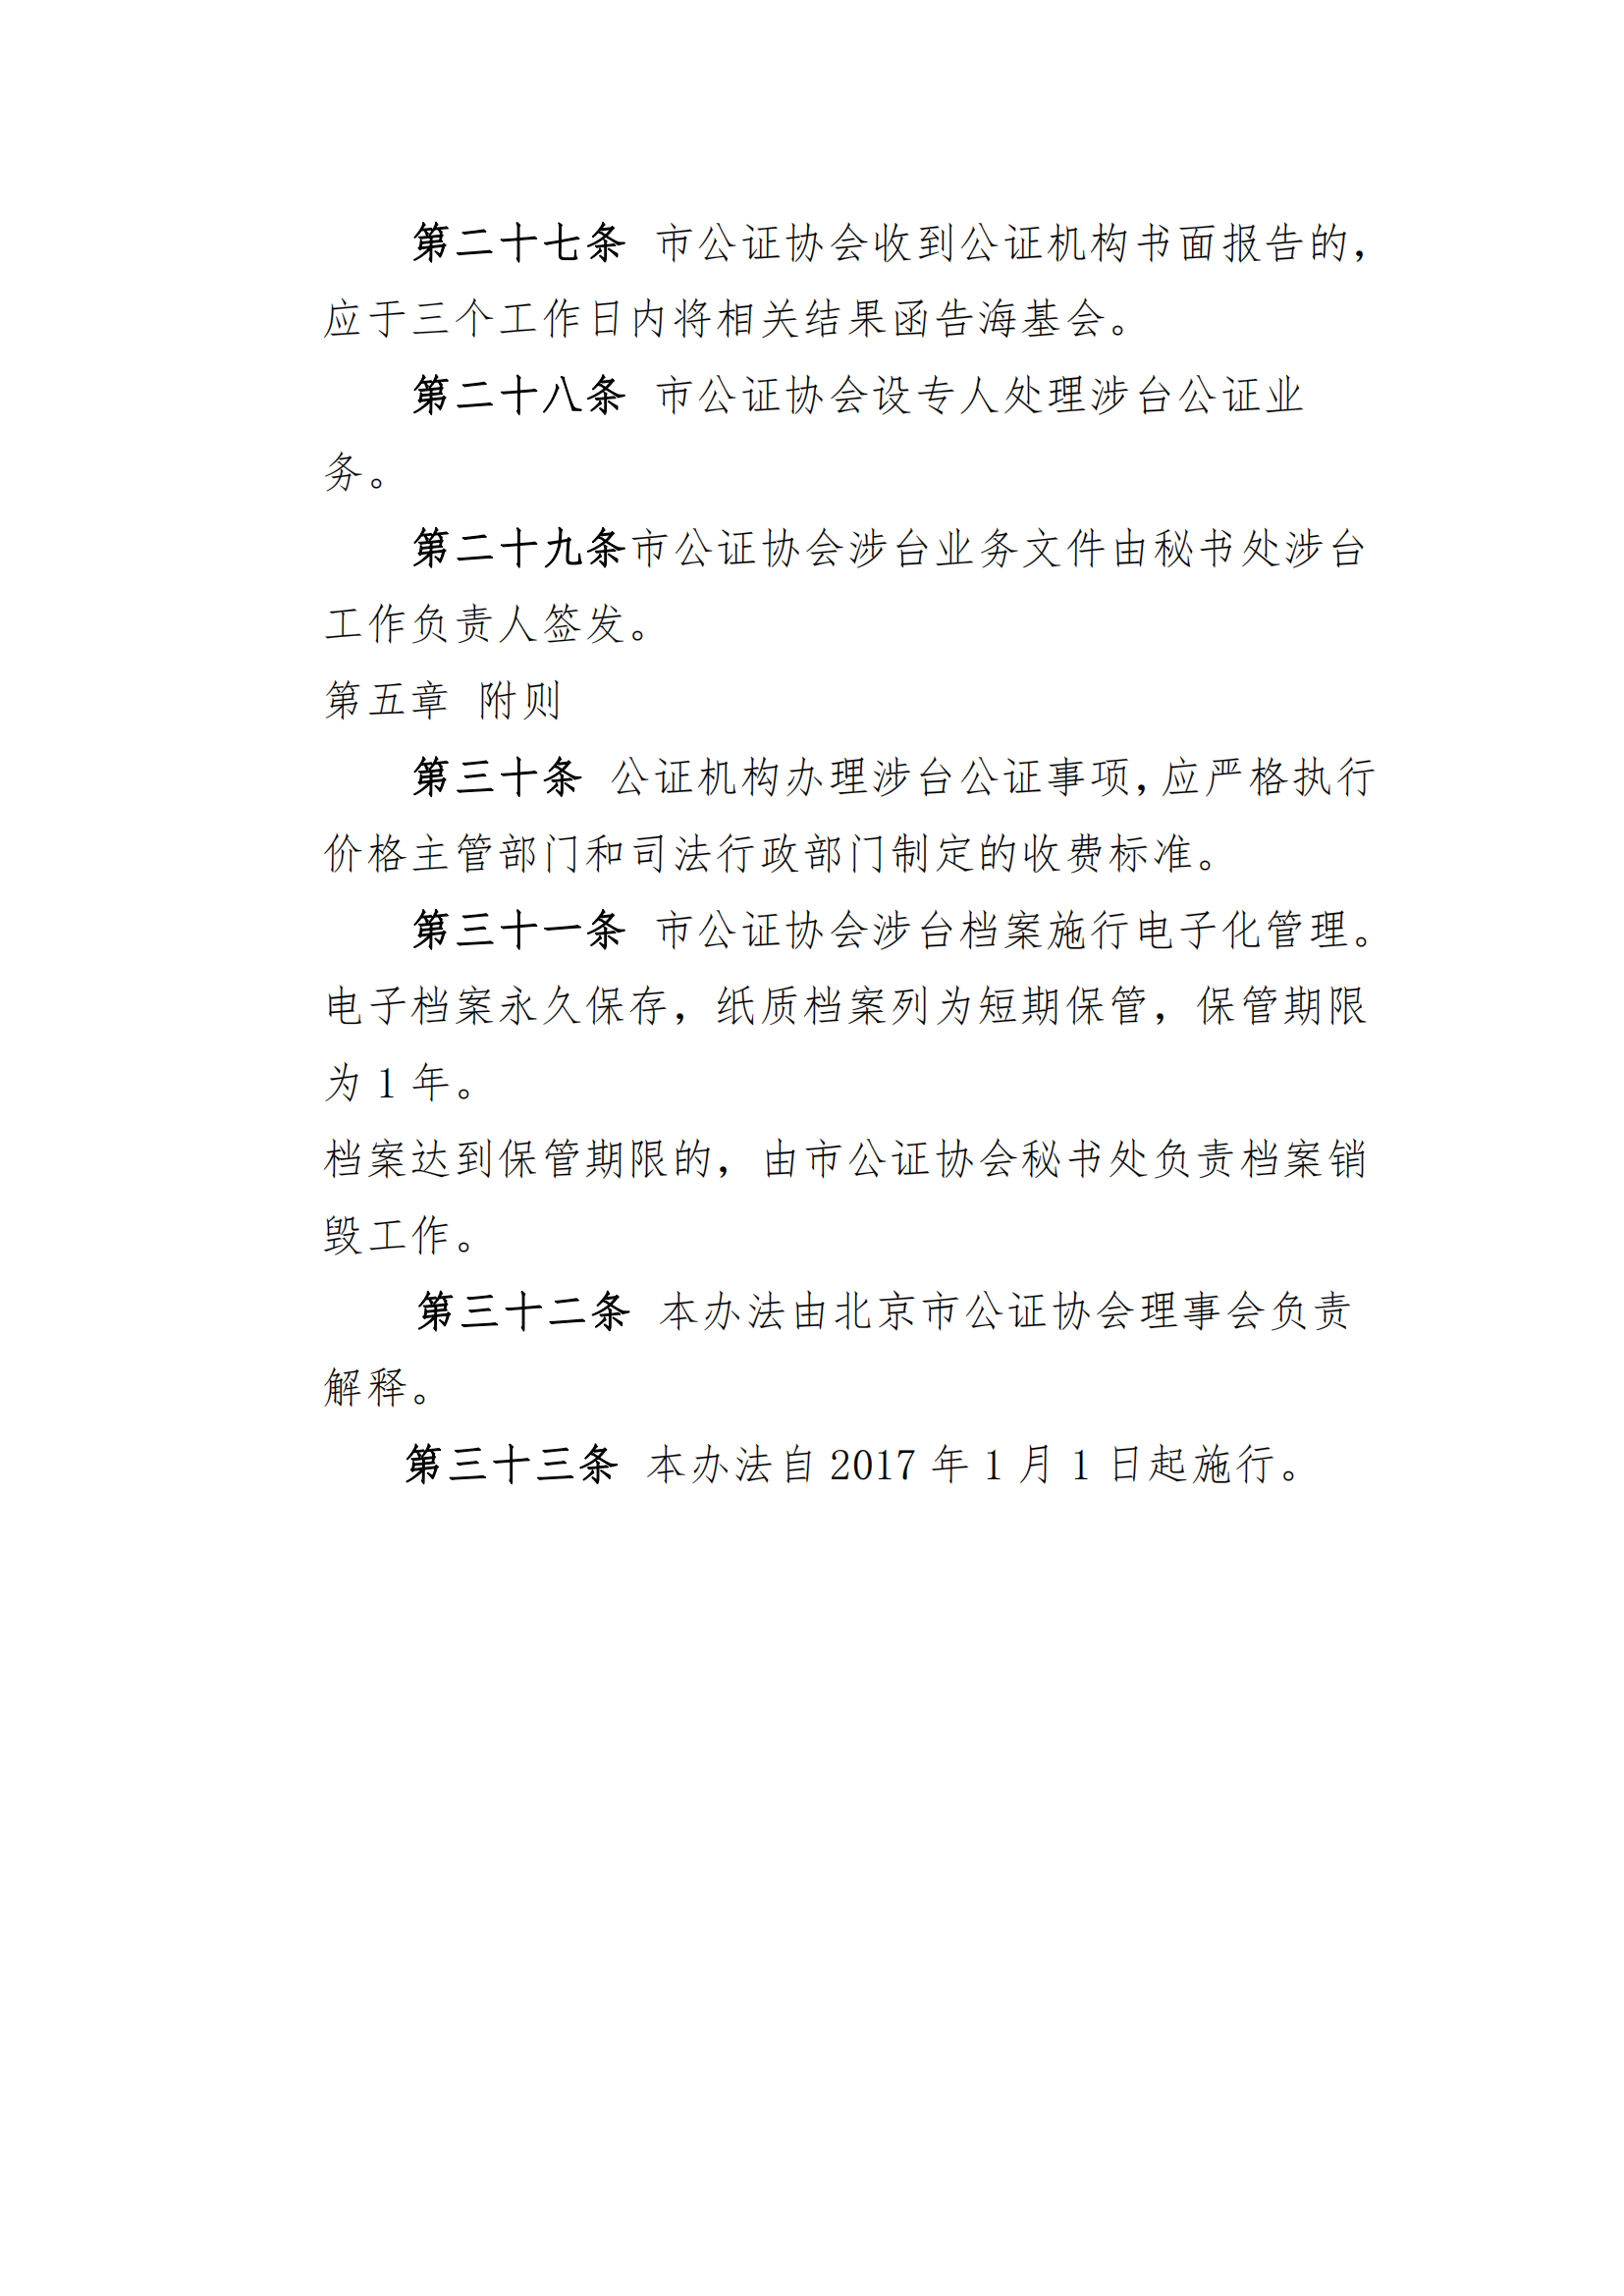 6北京市公证协会涉台公证业务管理办法_05